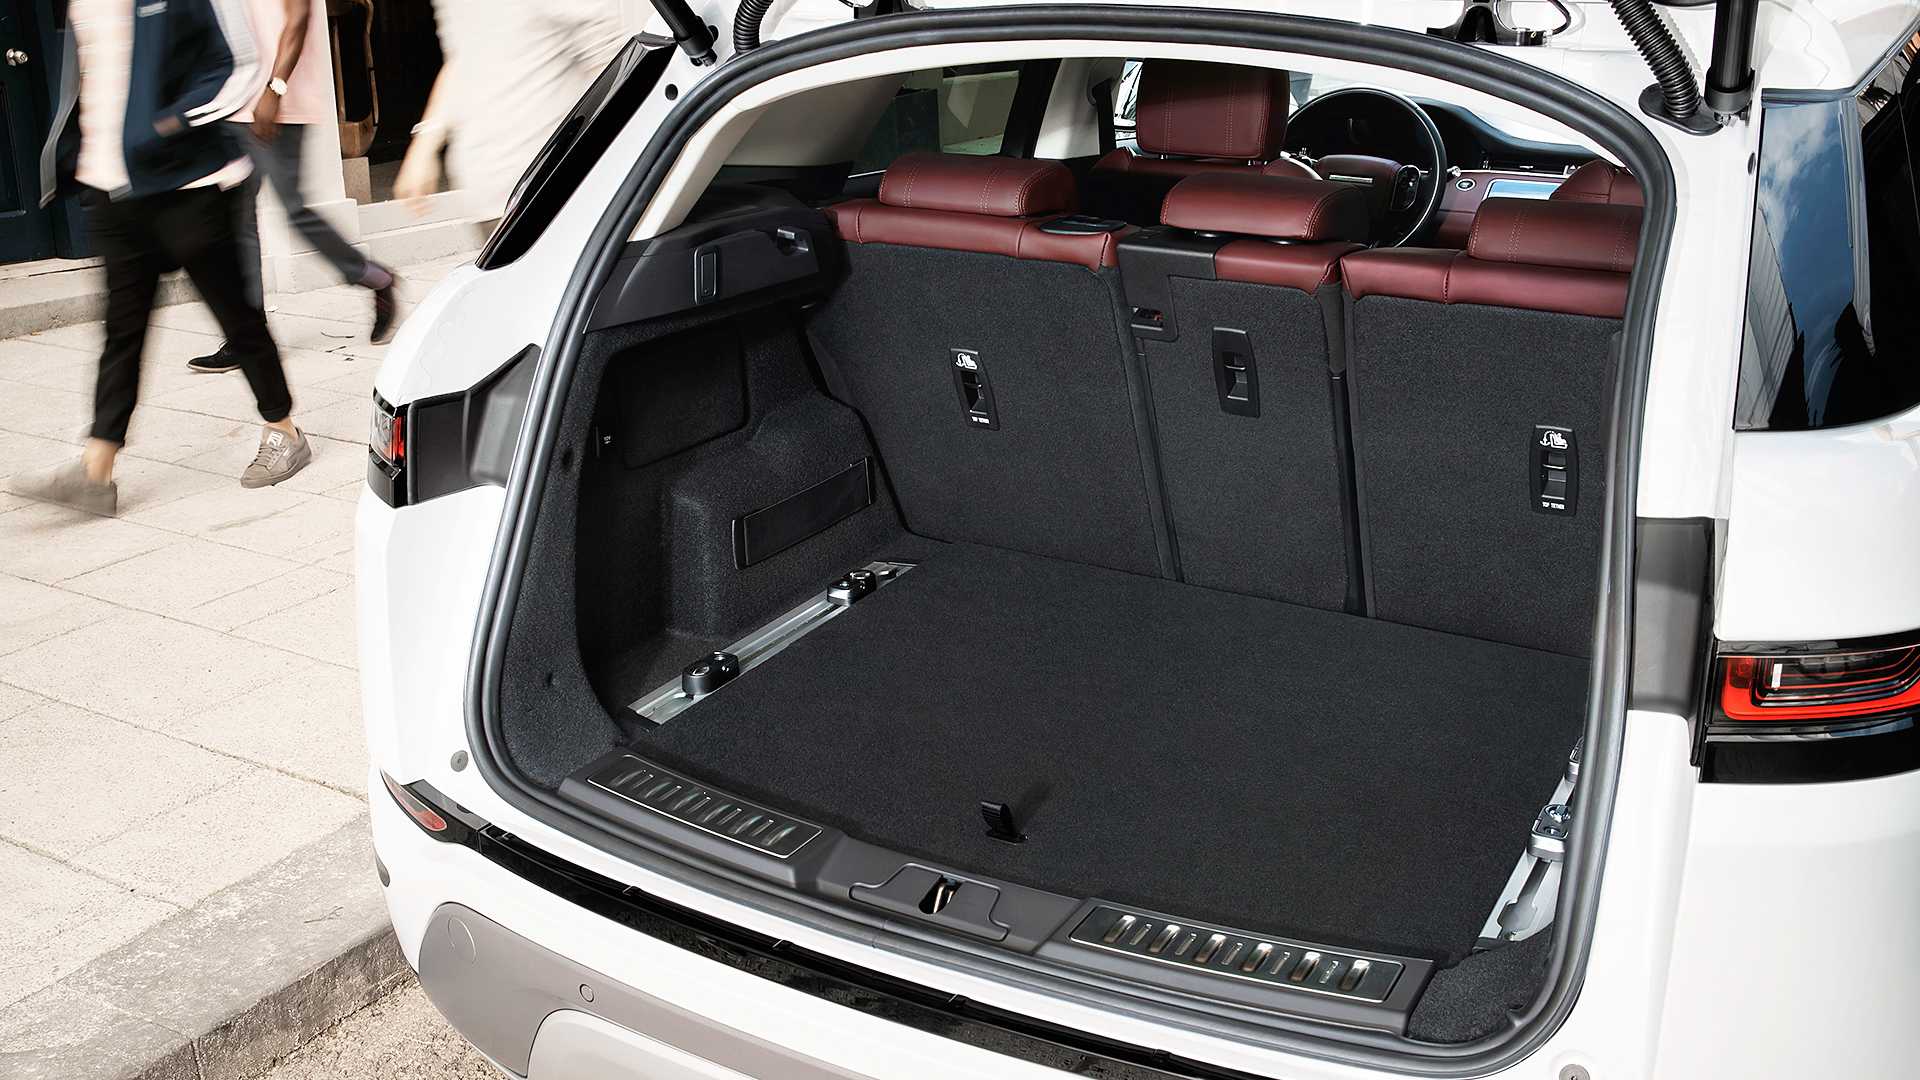 Oficial: nuevo Range Rover Evoque, información y fotos